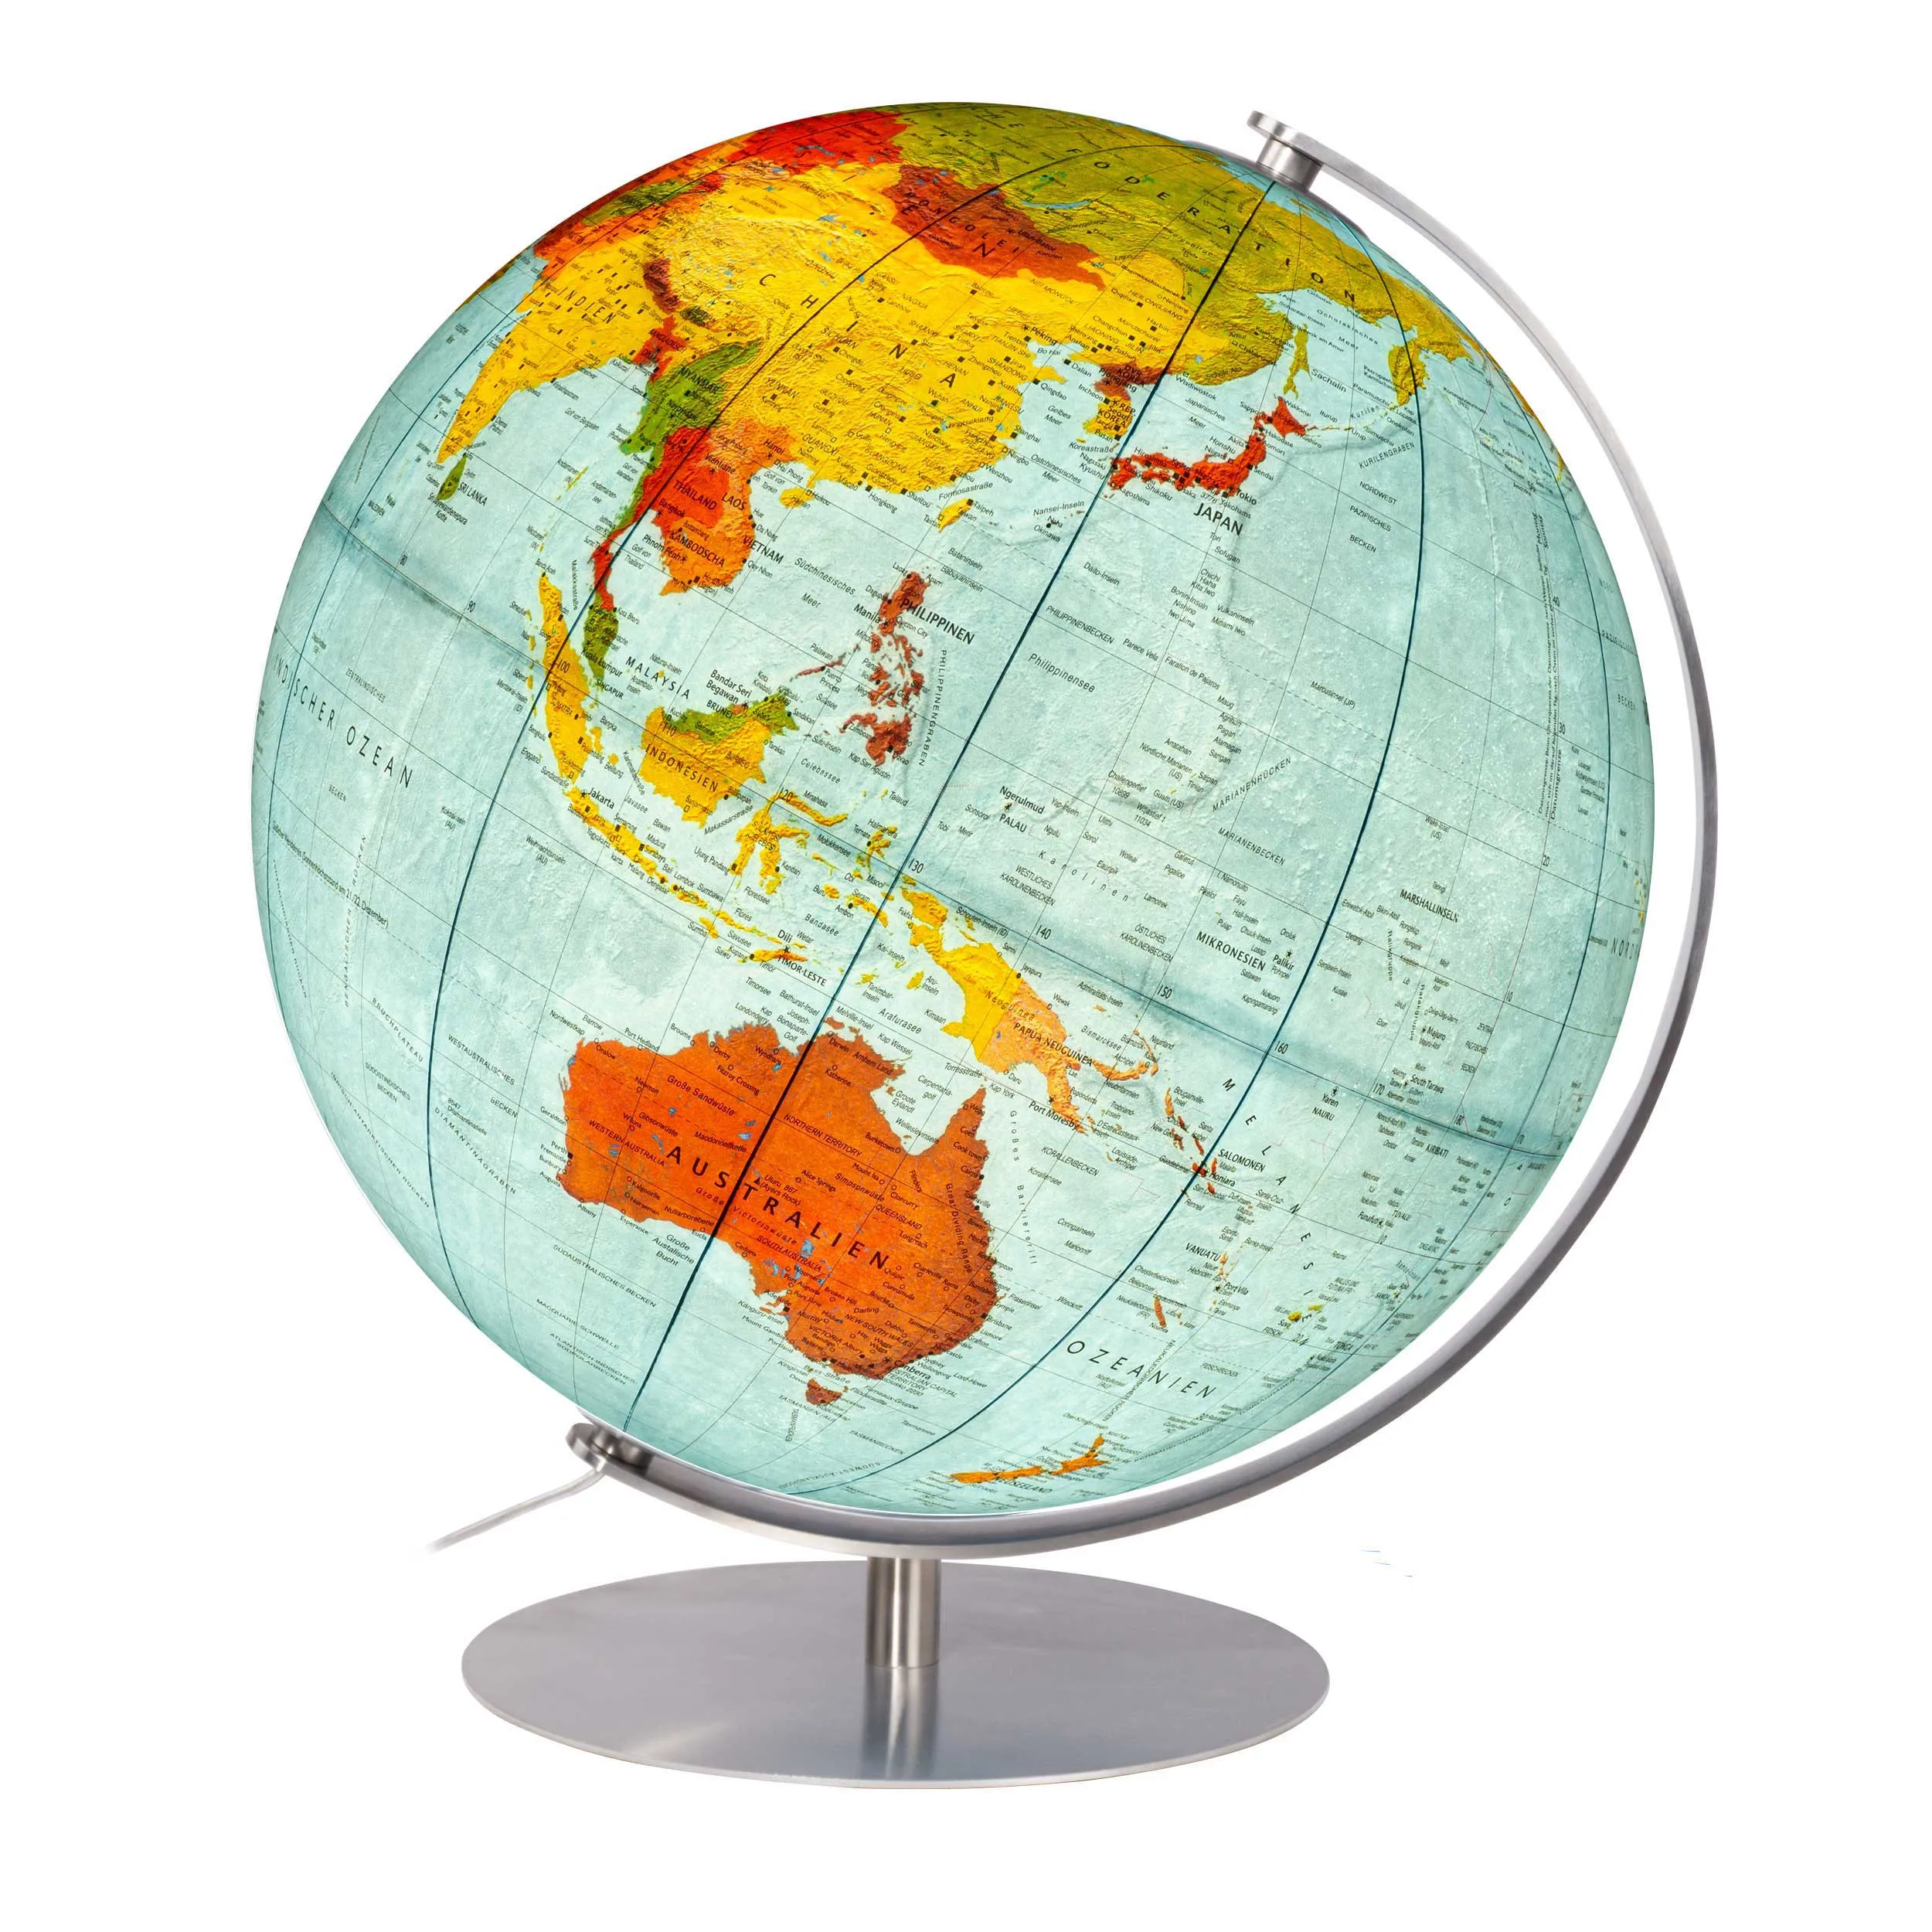 Hand-laminated double-image illuminated globe DFN 3703 - ⌀ 37 cm